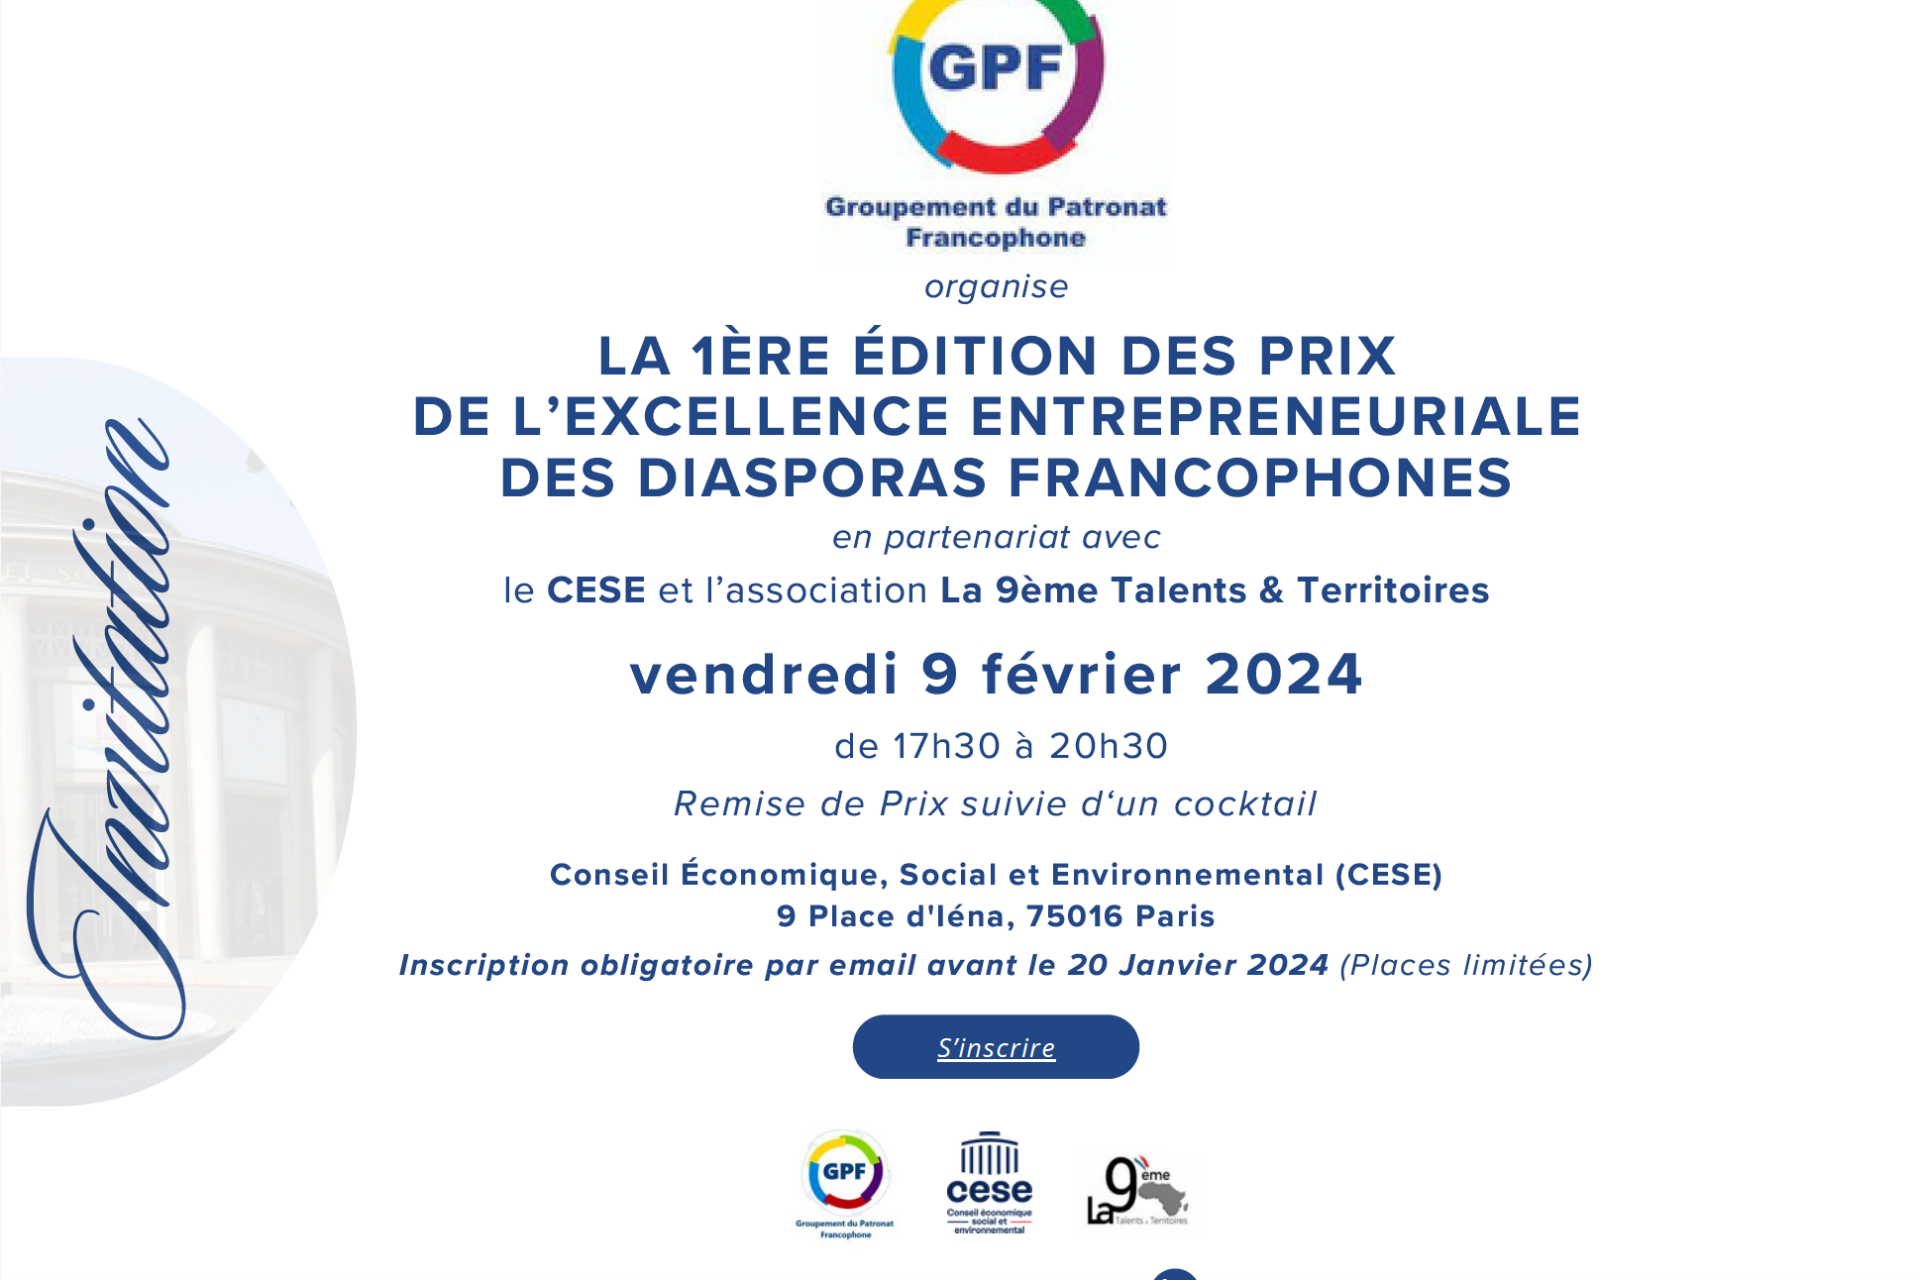 La 1ère édition des prix de l’excellence entrepreneuriale des diasporas francophones